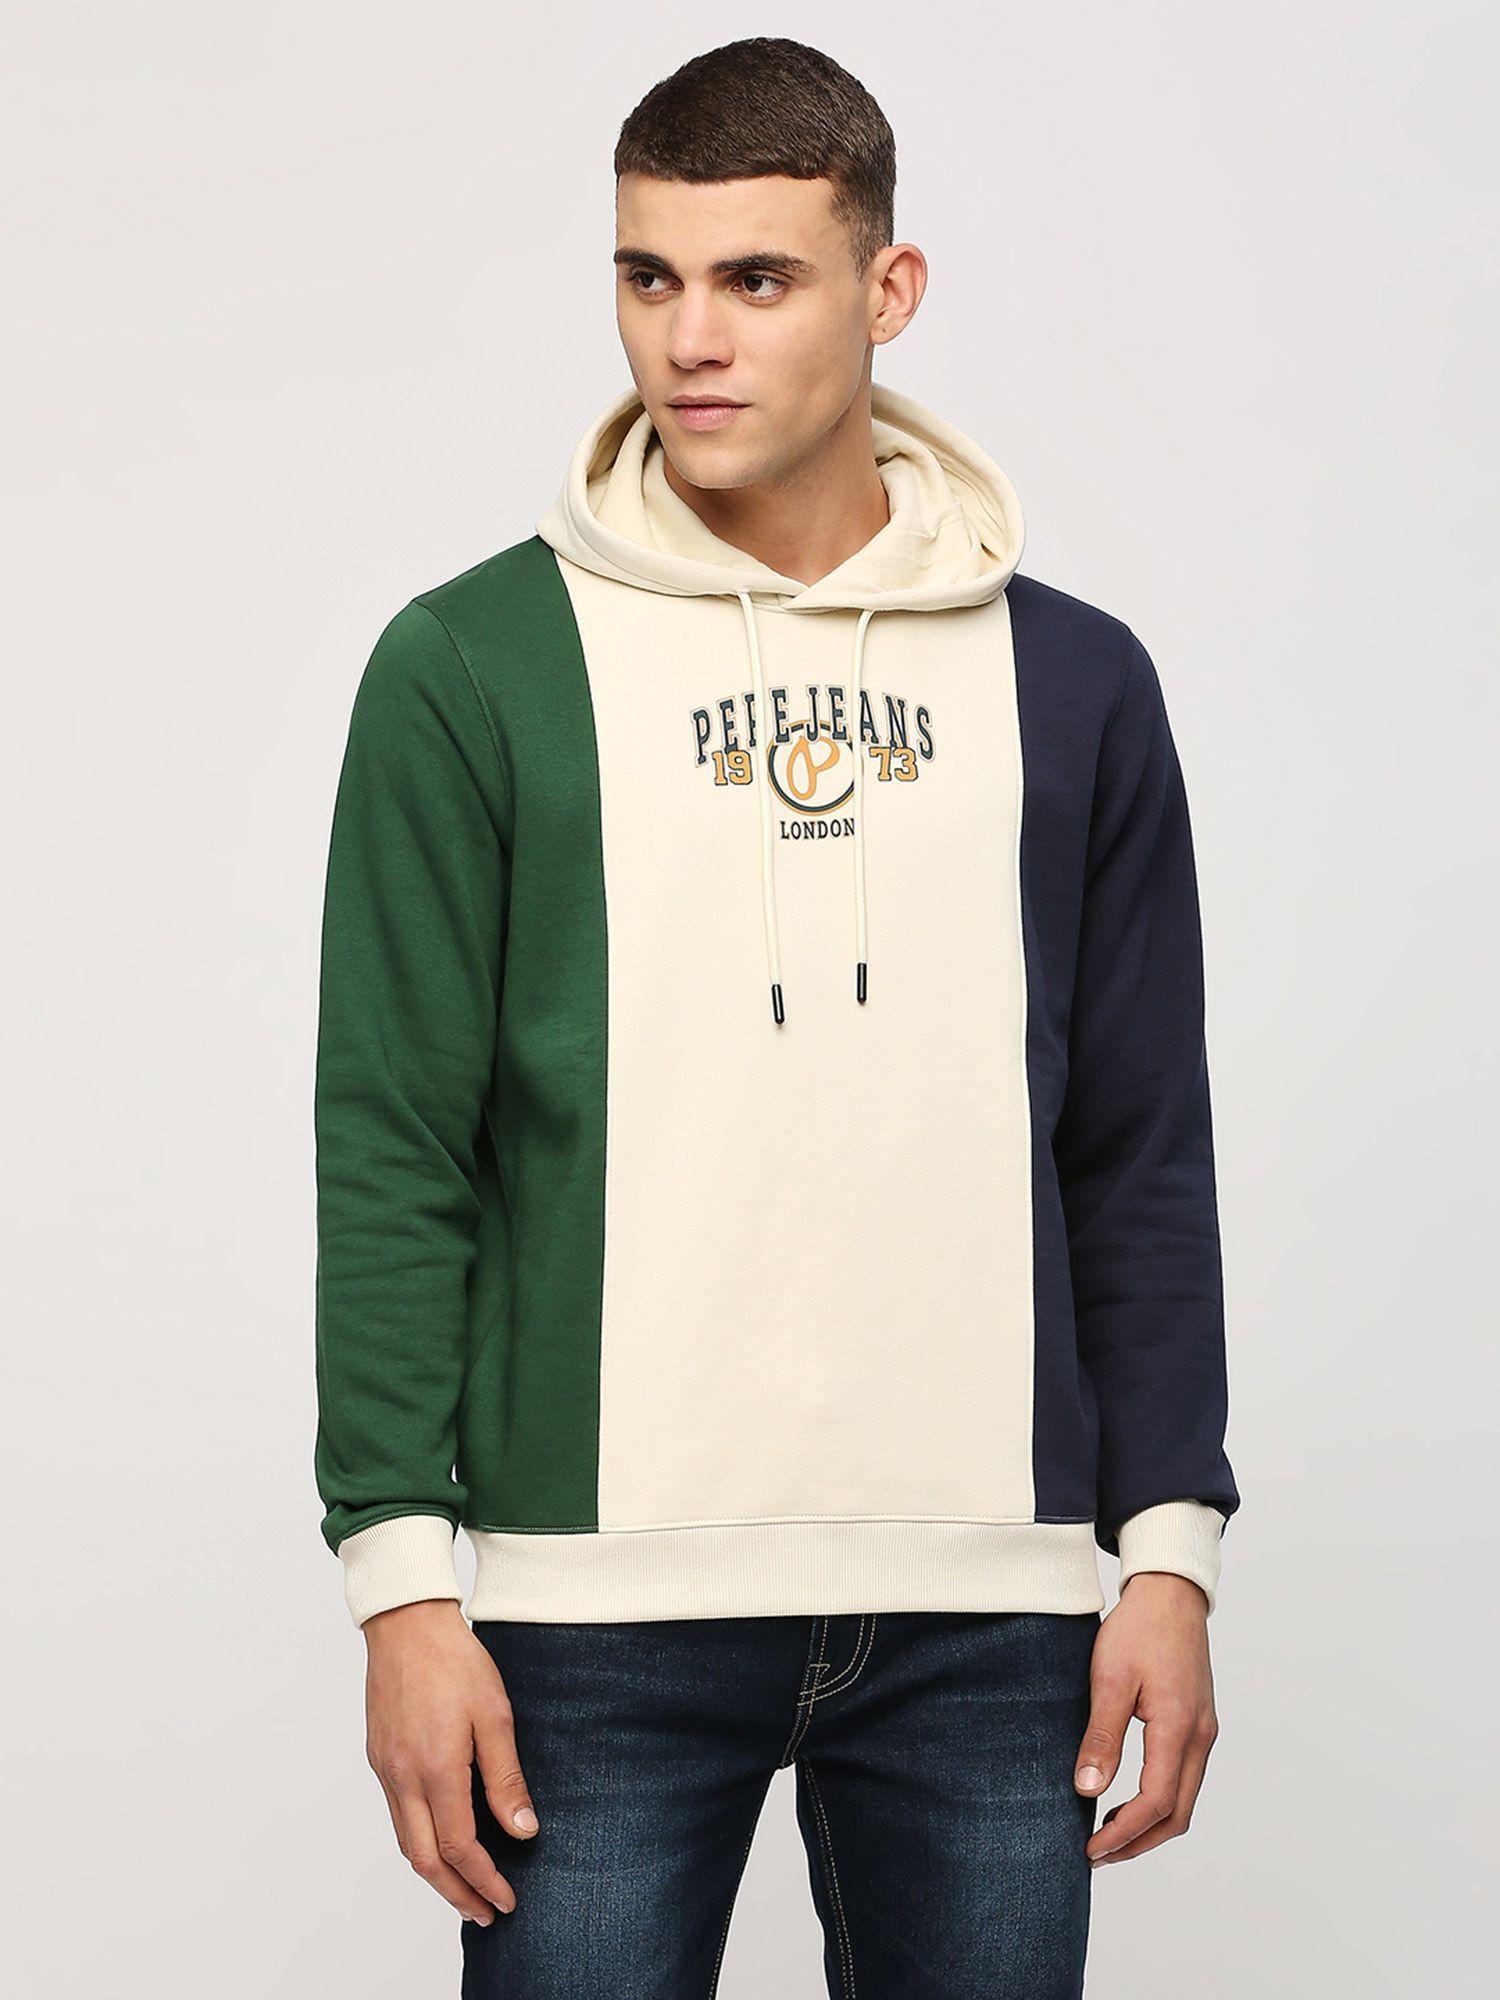 green-color-block-printed-hooded-sweatshirt